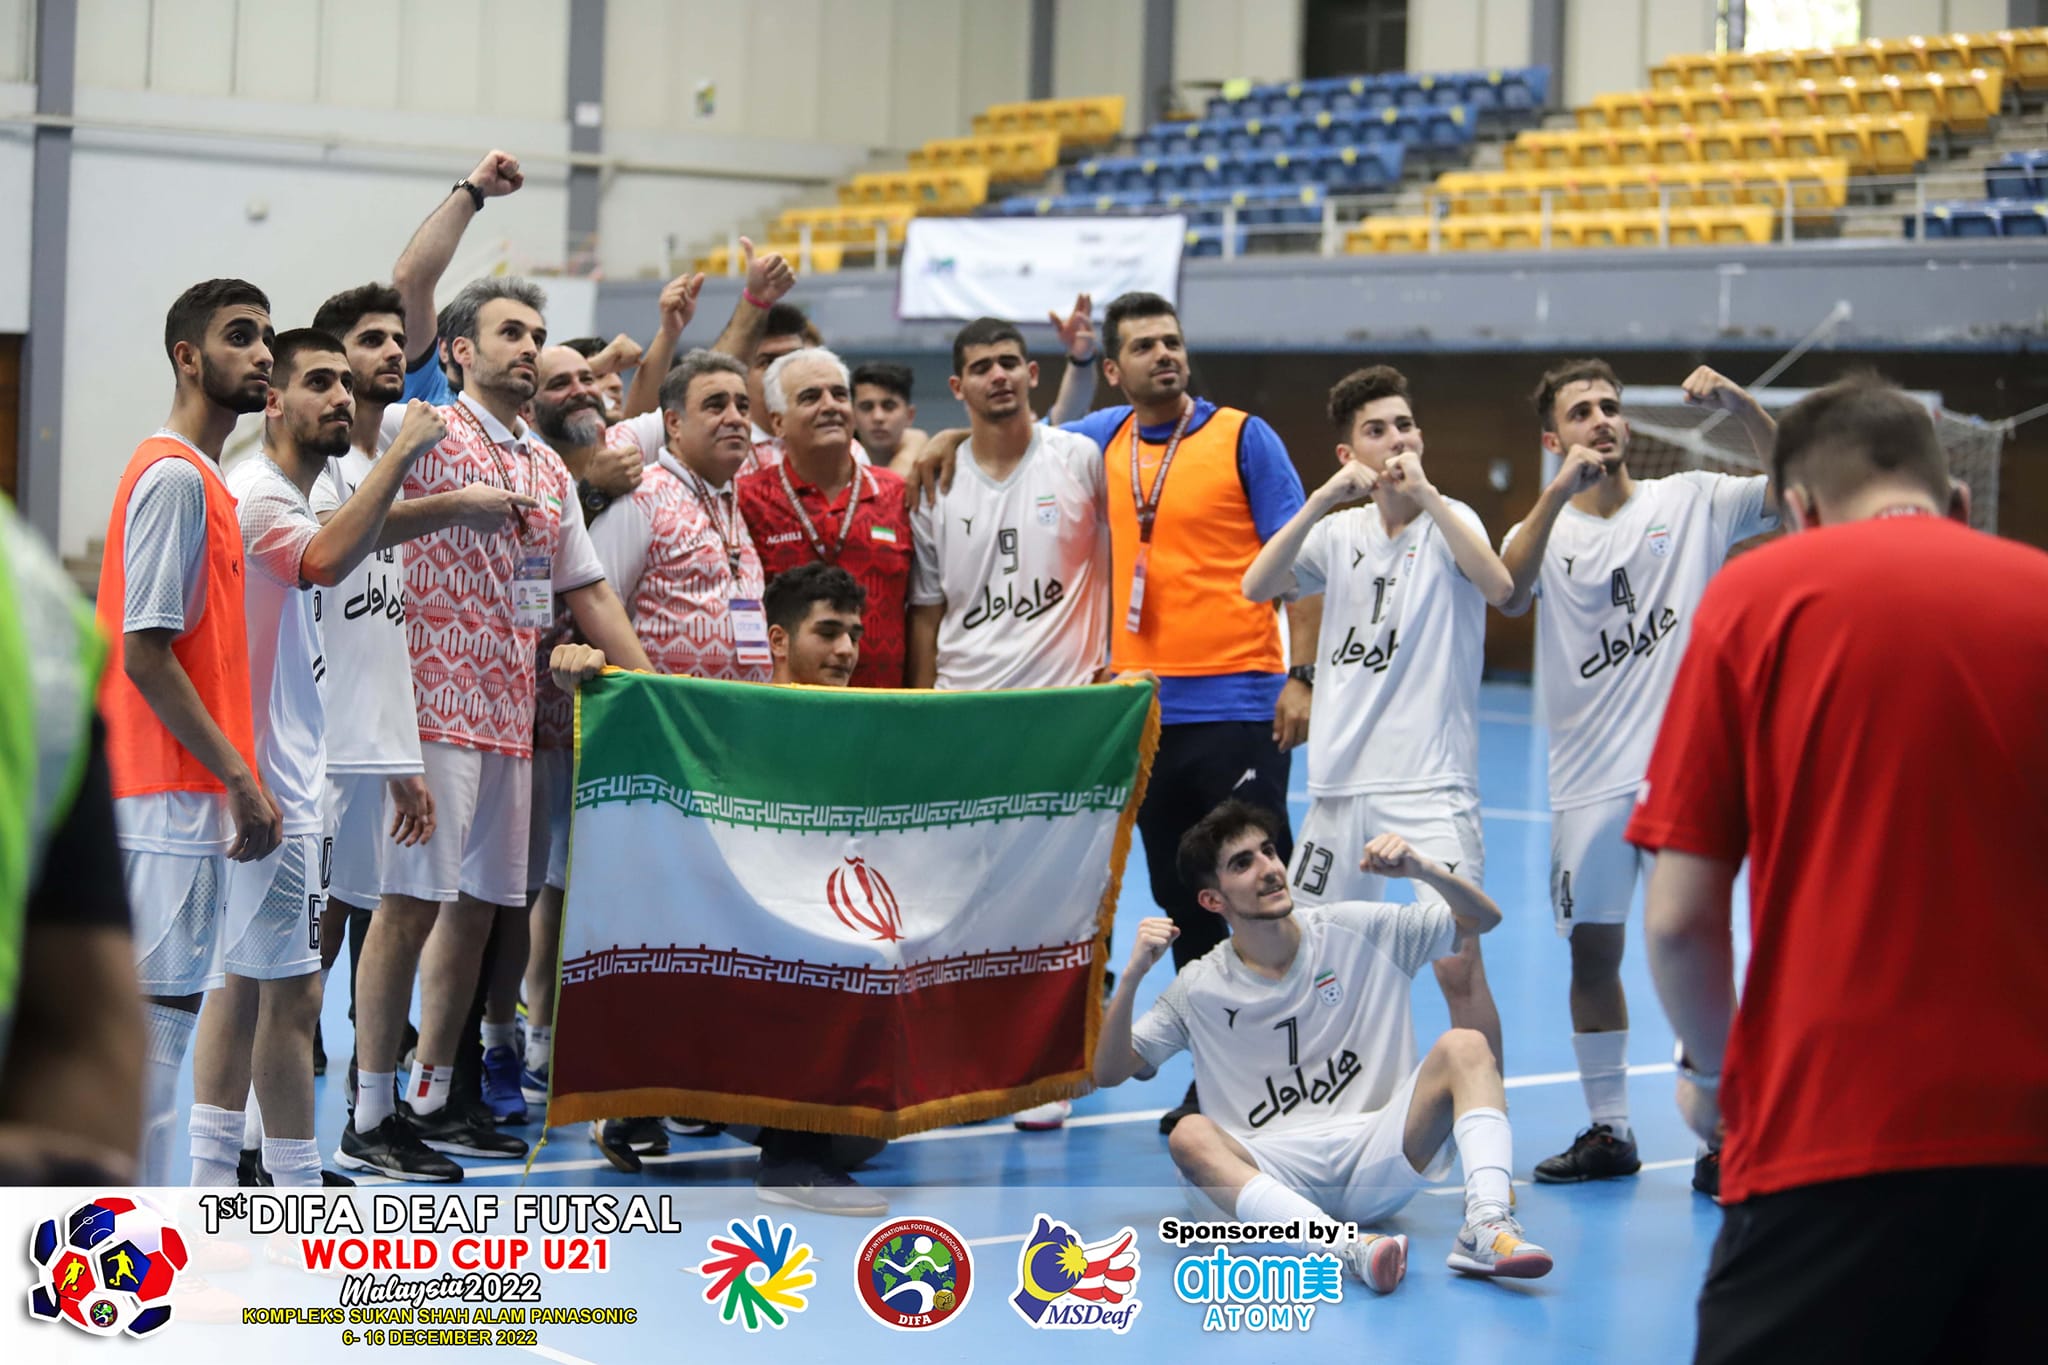 Iran’s team – champion 1st DIFA Deaf Futsal World Cup U21.